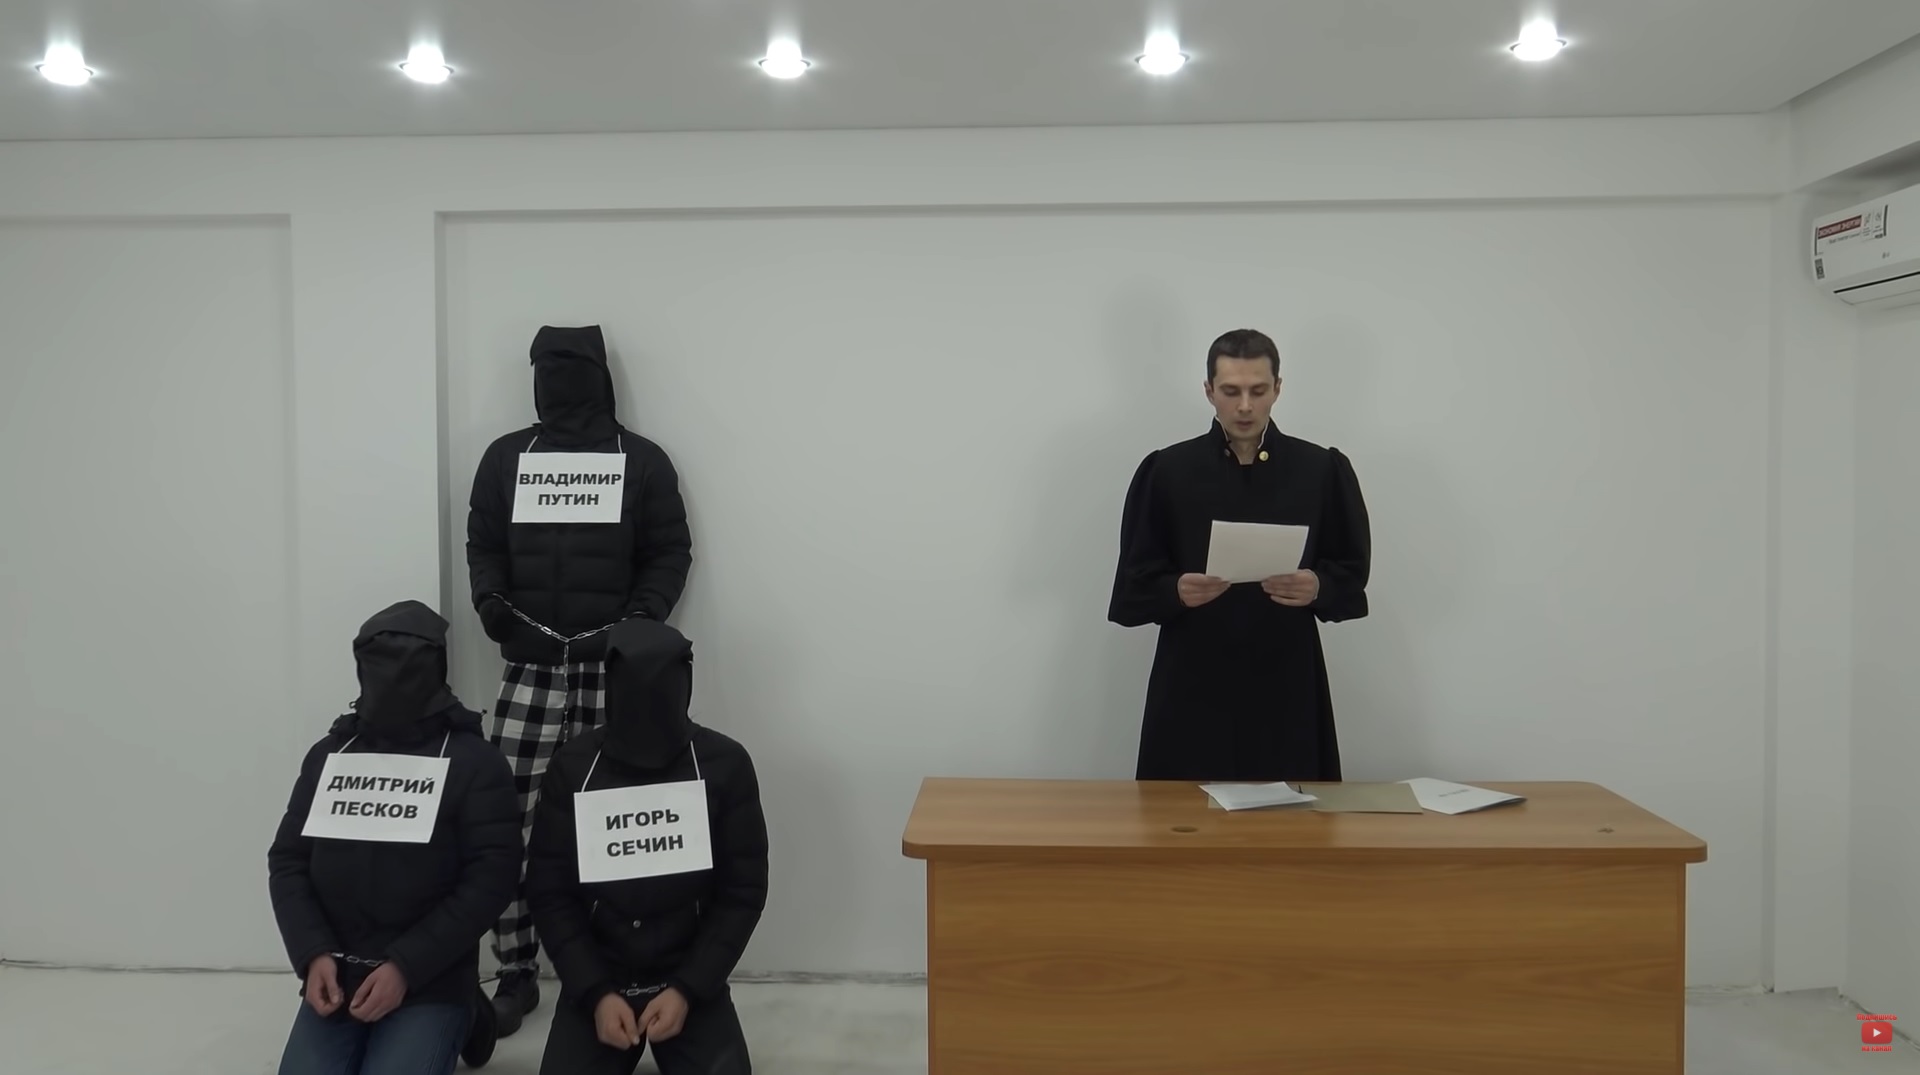 Активиста из Челнов задержали по делу о призывах к терроризму